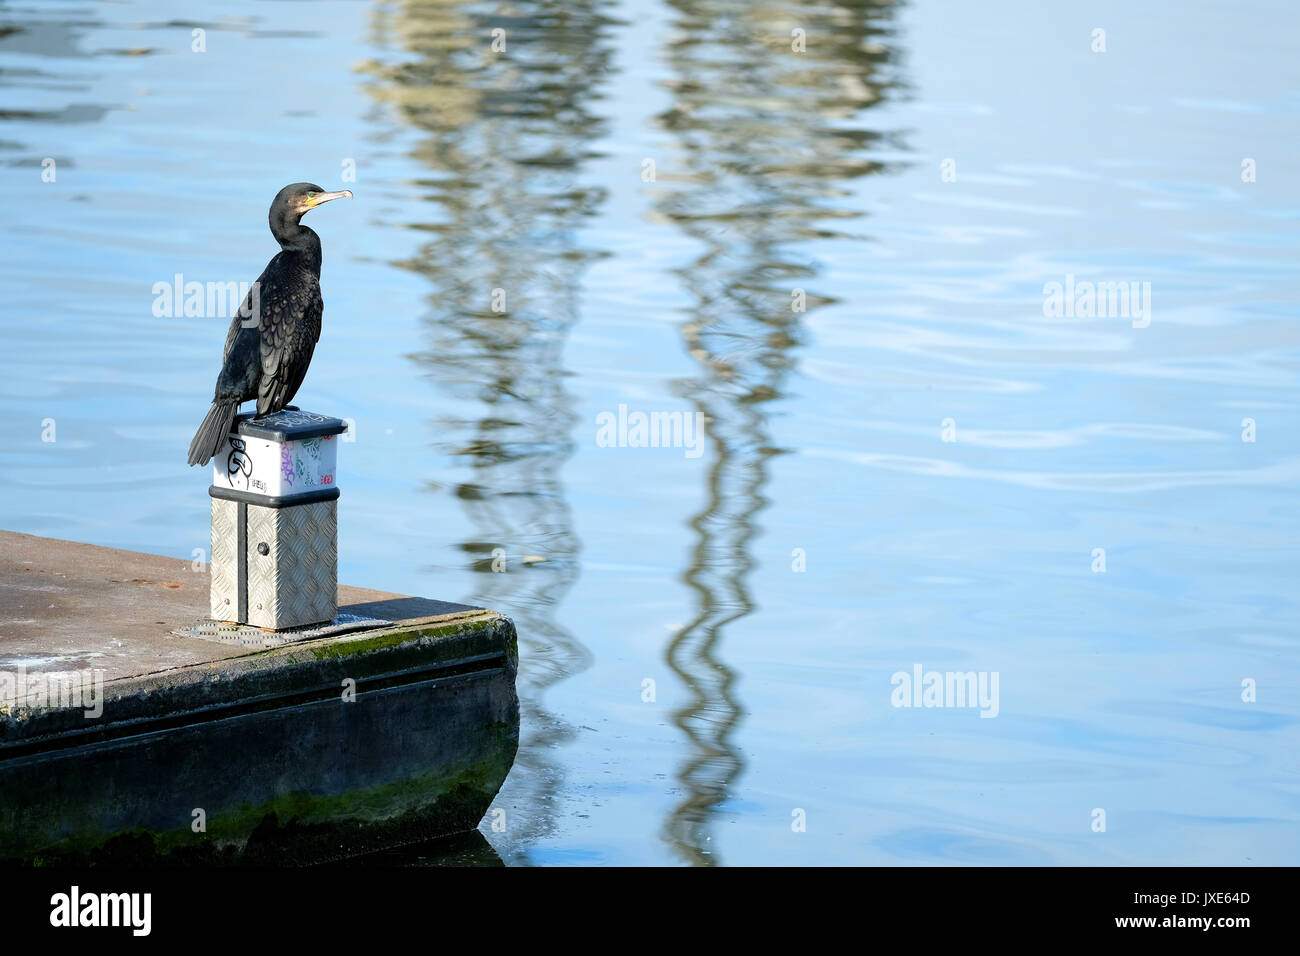 Un cormorano, Phalacrocorax carbo, appoggiato sul fianco di h city docks in Bristol, Regno Unito Foto Stock